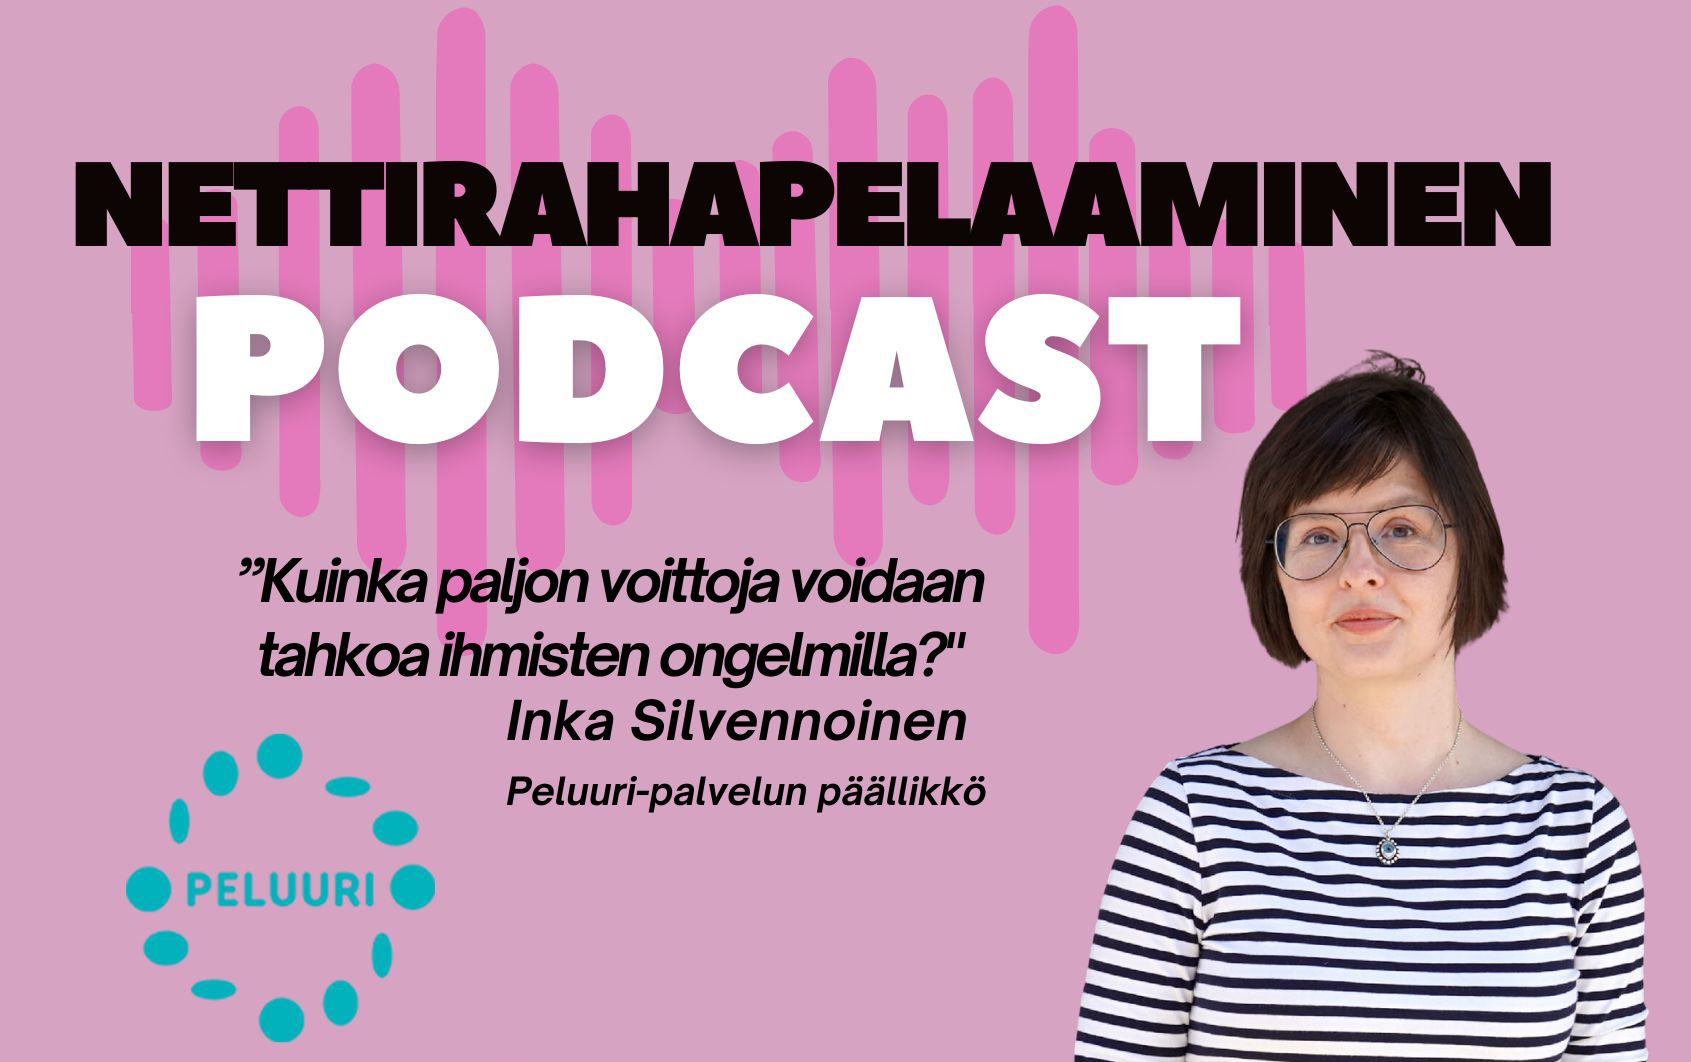 Nettirahapelaaminen- podcast: Kuinka paljon rahaa voidaan tahkoa ihmisten ongelmilla? kysyy Peluuri-palvelun päällikkö Inka Silvennoinen.